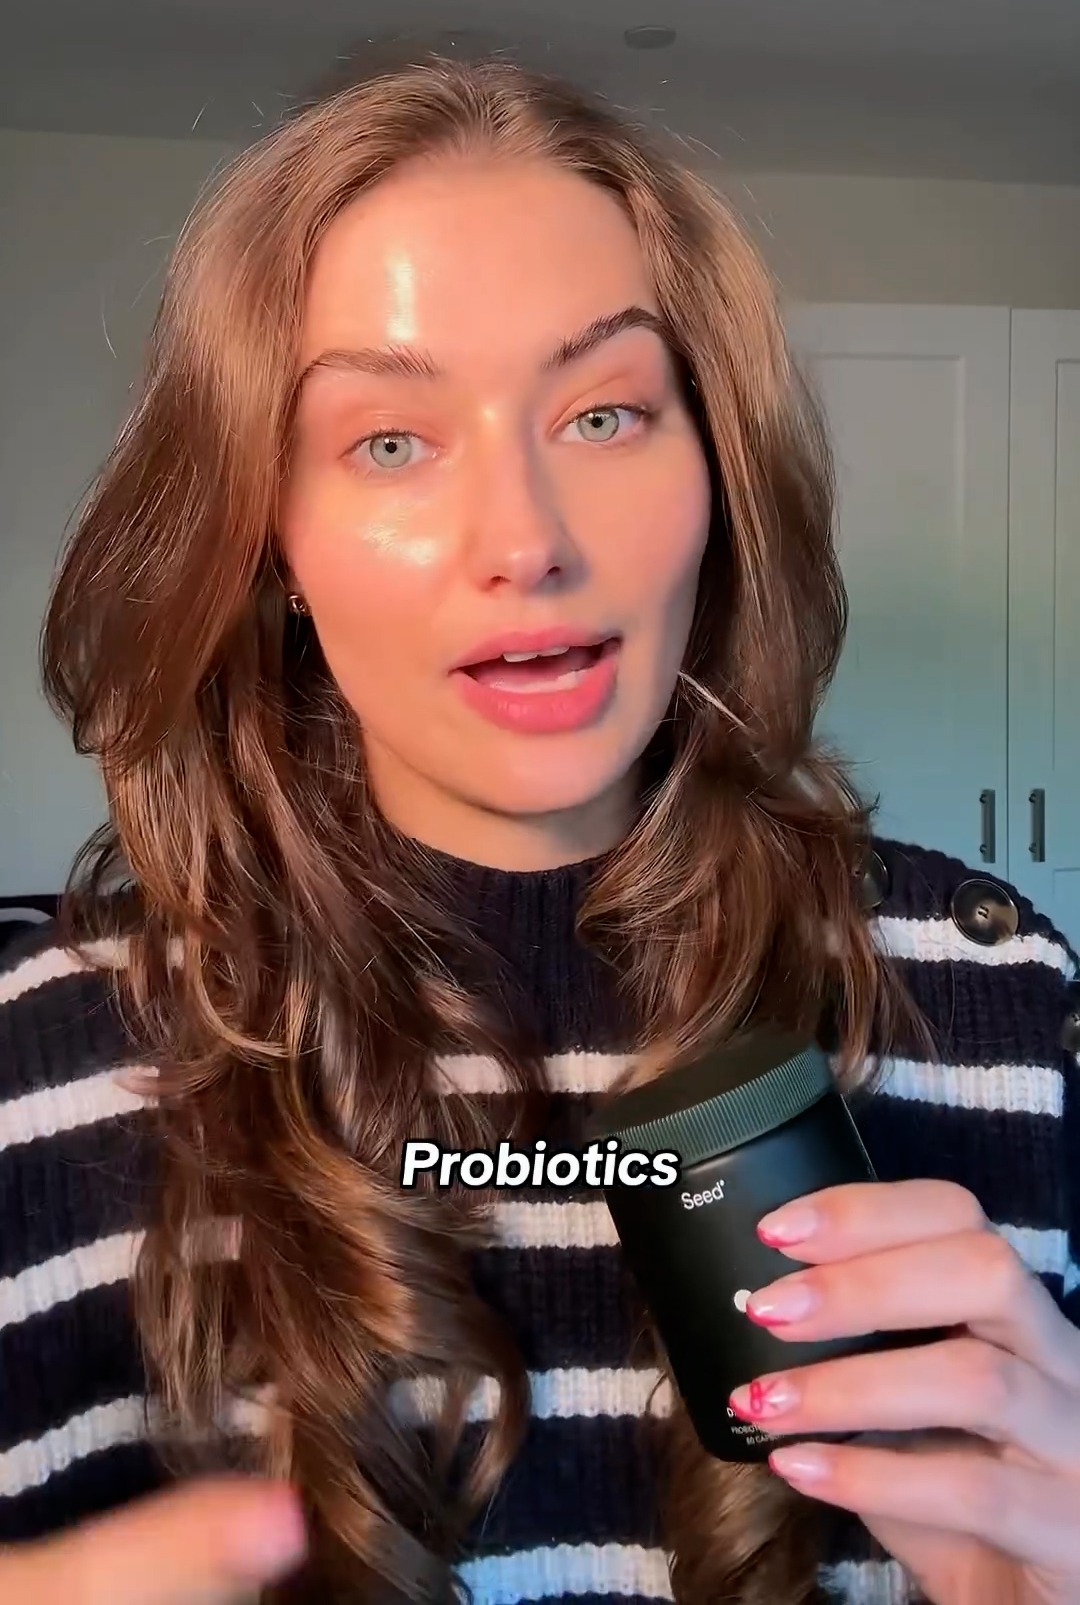 Elle a recommandé des probiotiques pour la santé générale de la peau